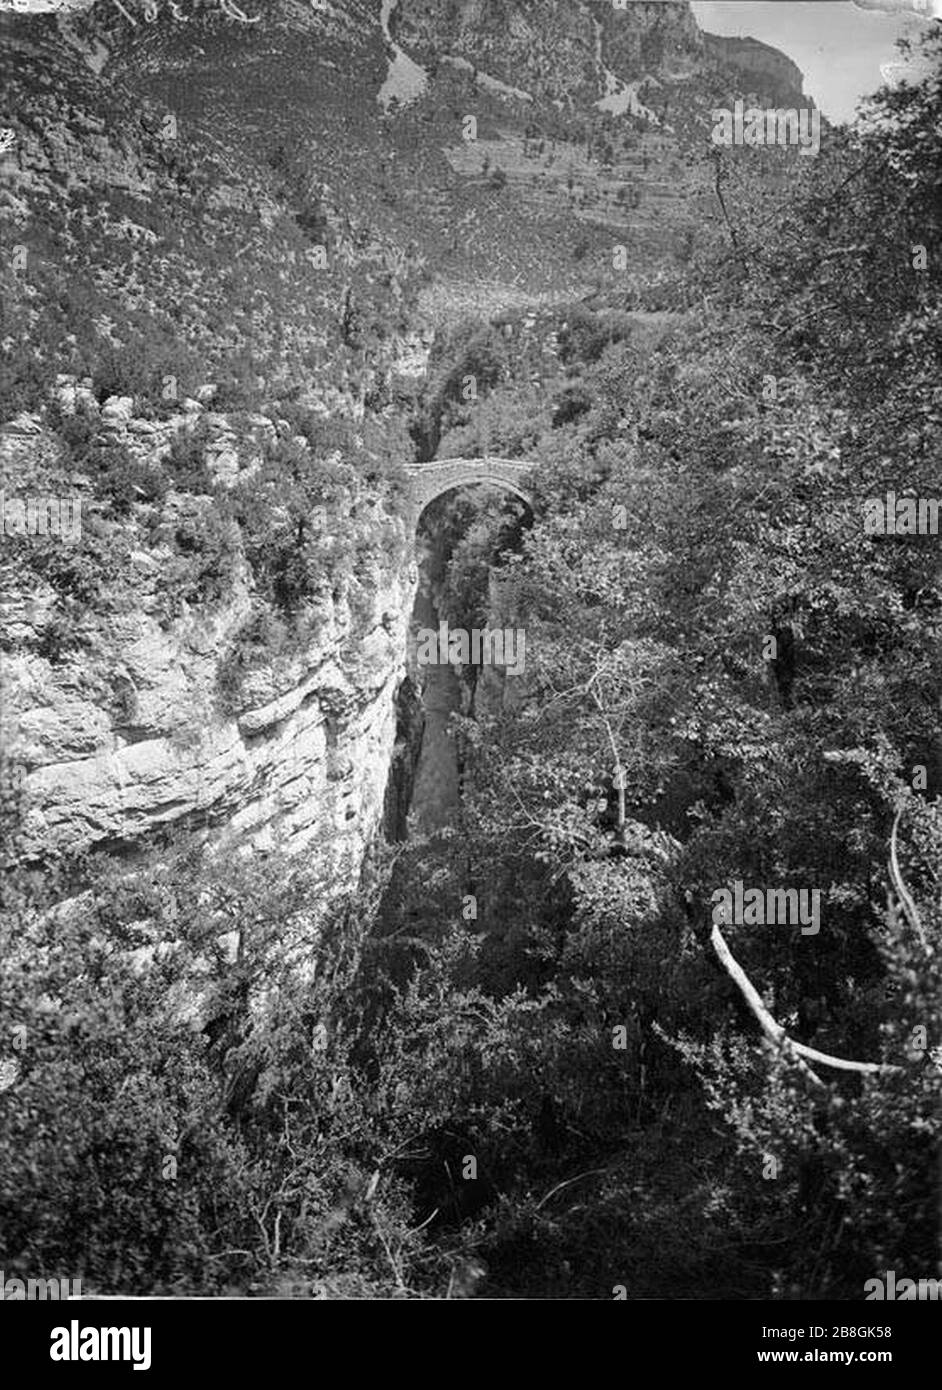 Gorja i pont de San Urbez amb el riu Bellós al fons i vegetació al voltant. Stock Photo